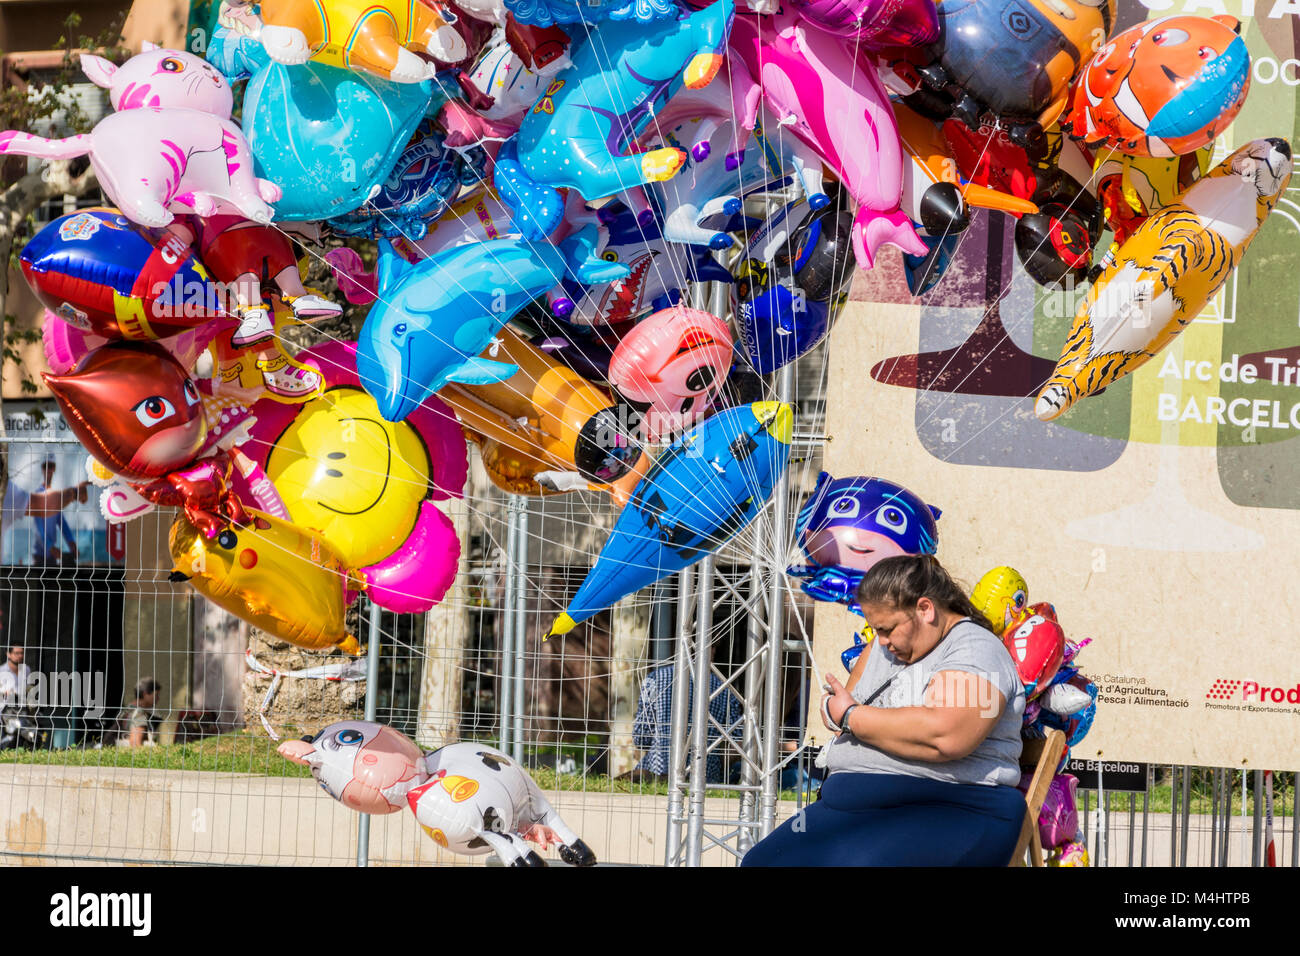 Luftballonverkäuferin in Barcellona, Spanien Foto Stock